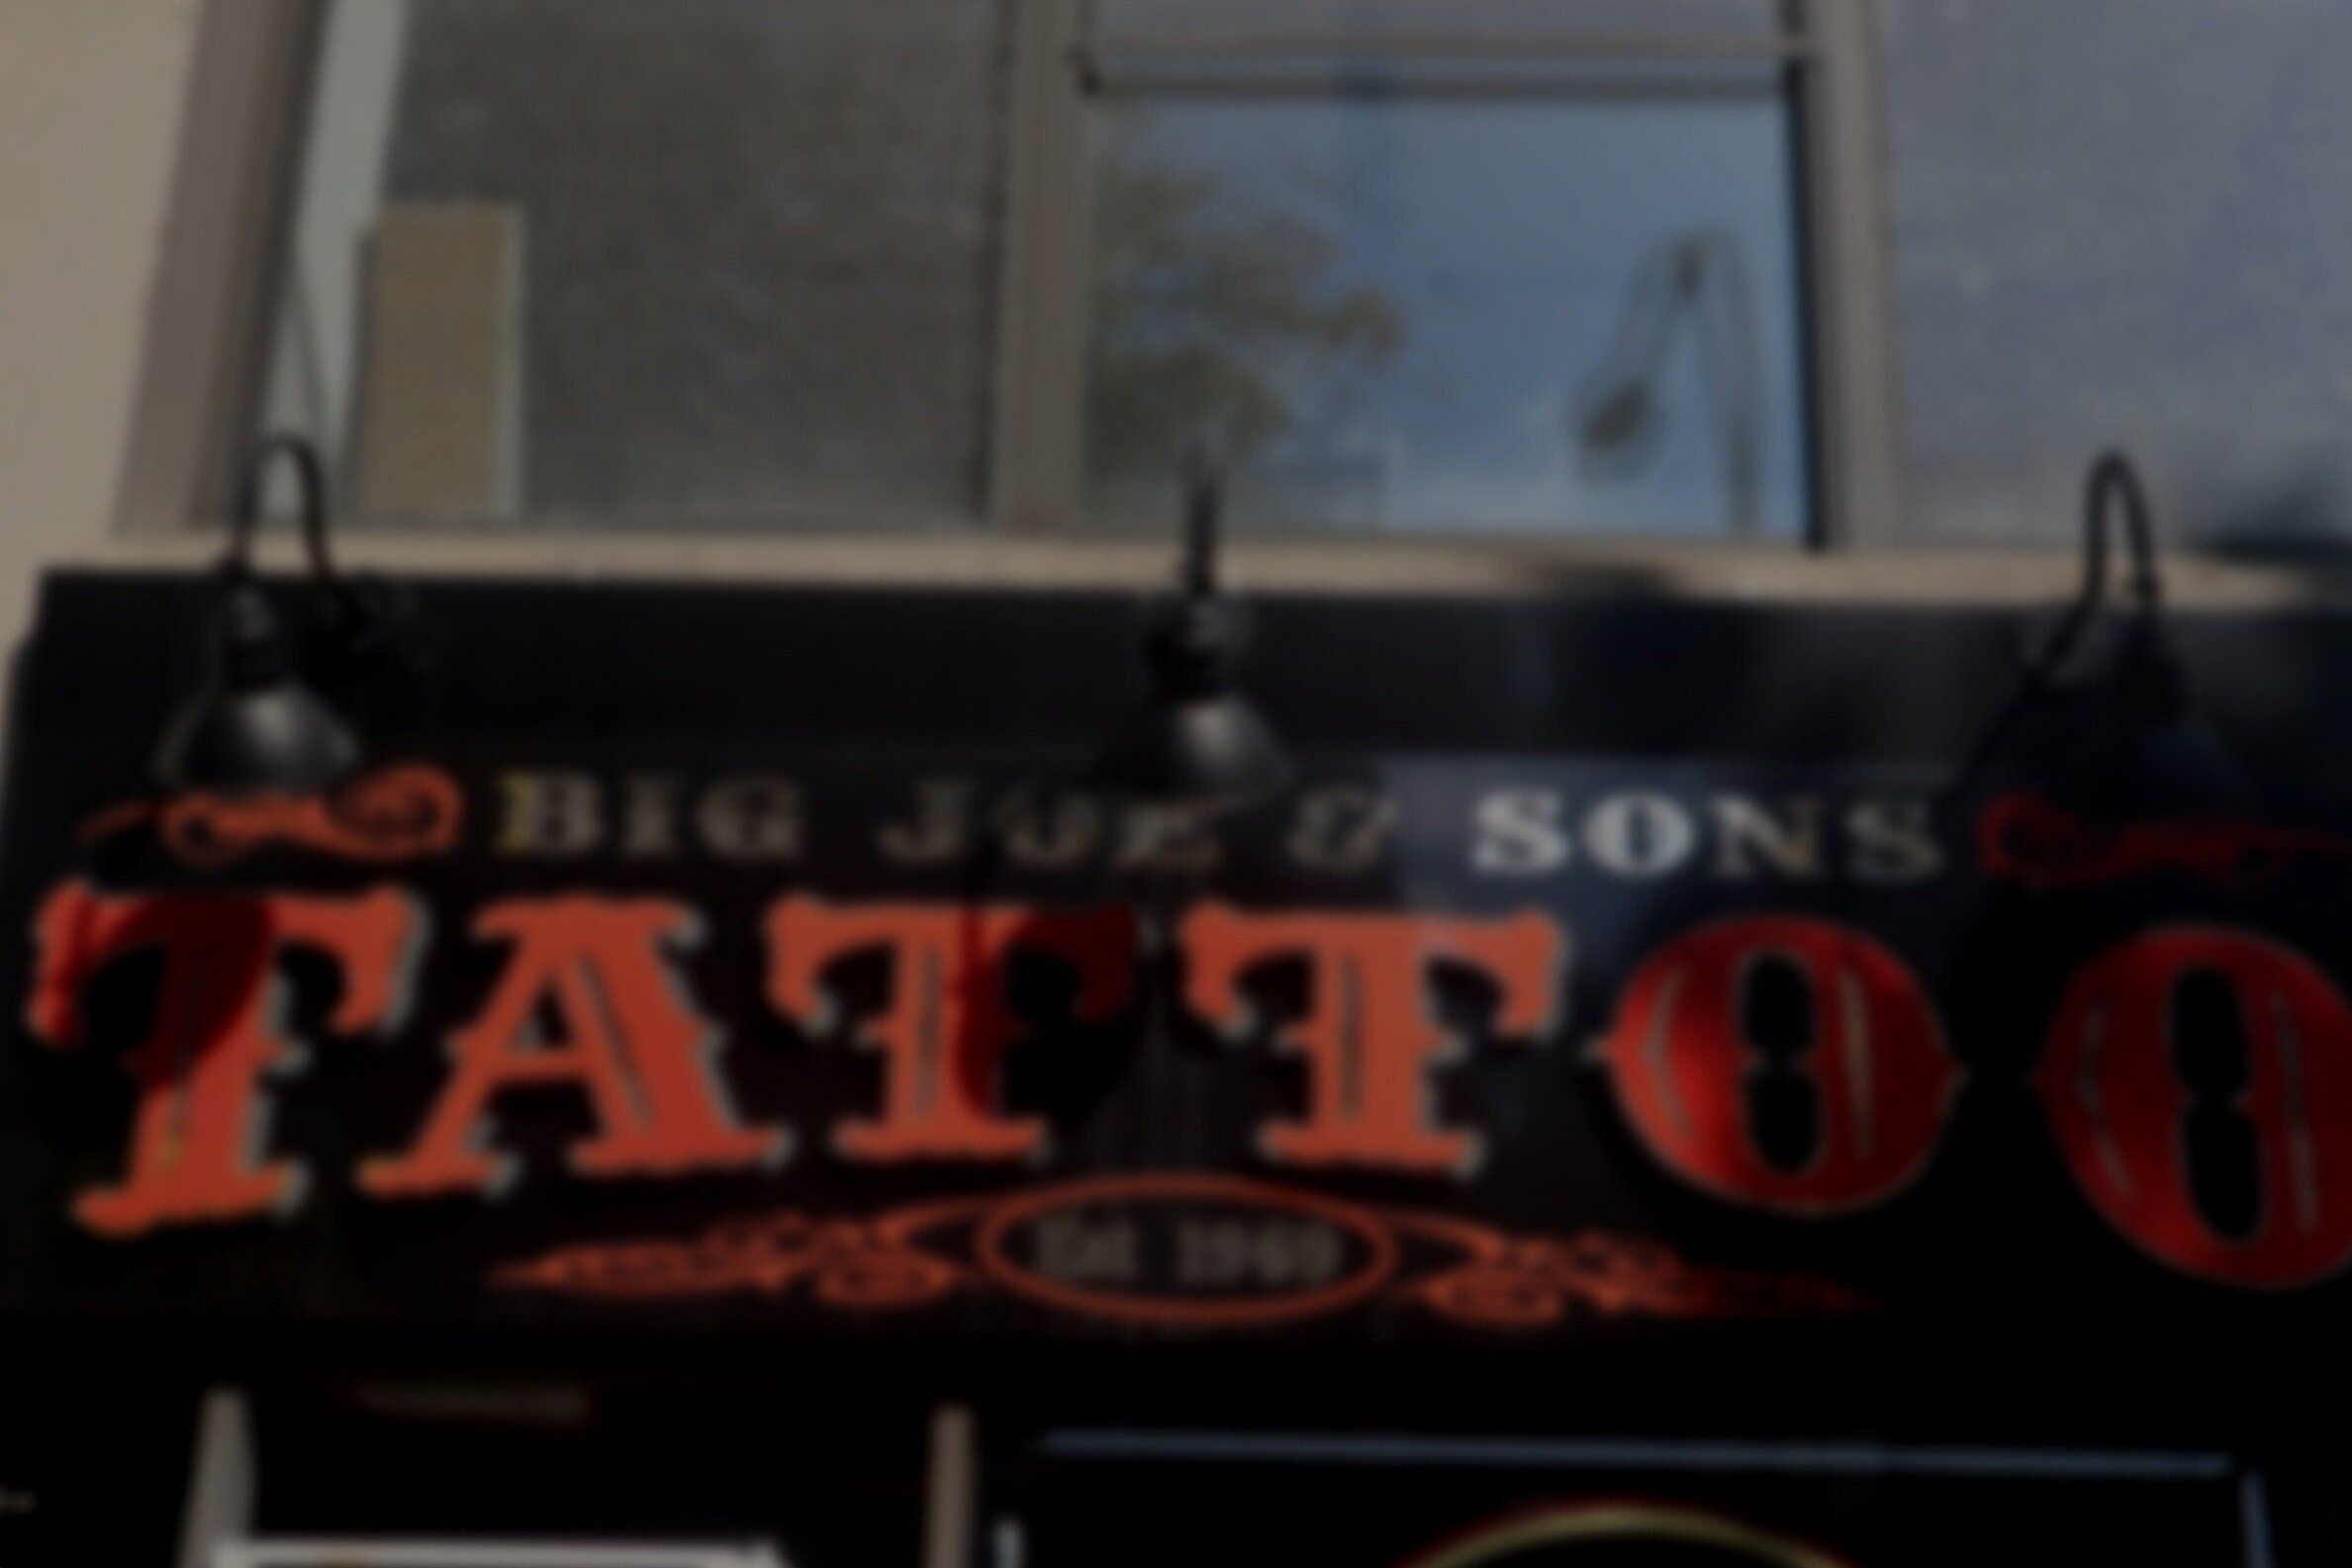 Big Joe & Sons Tattoo & Piercing